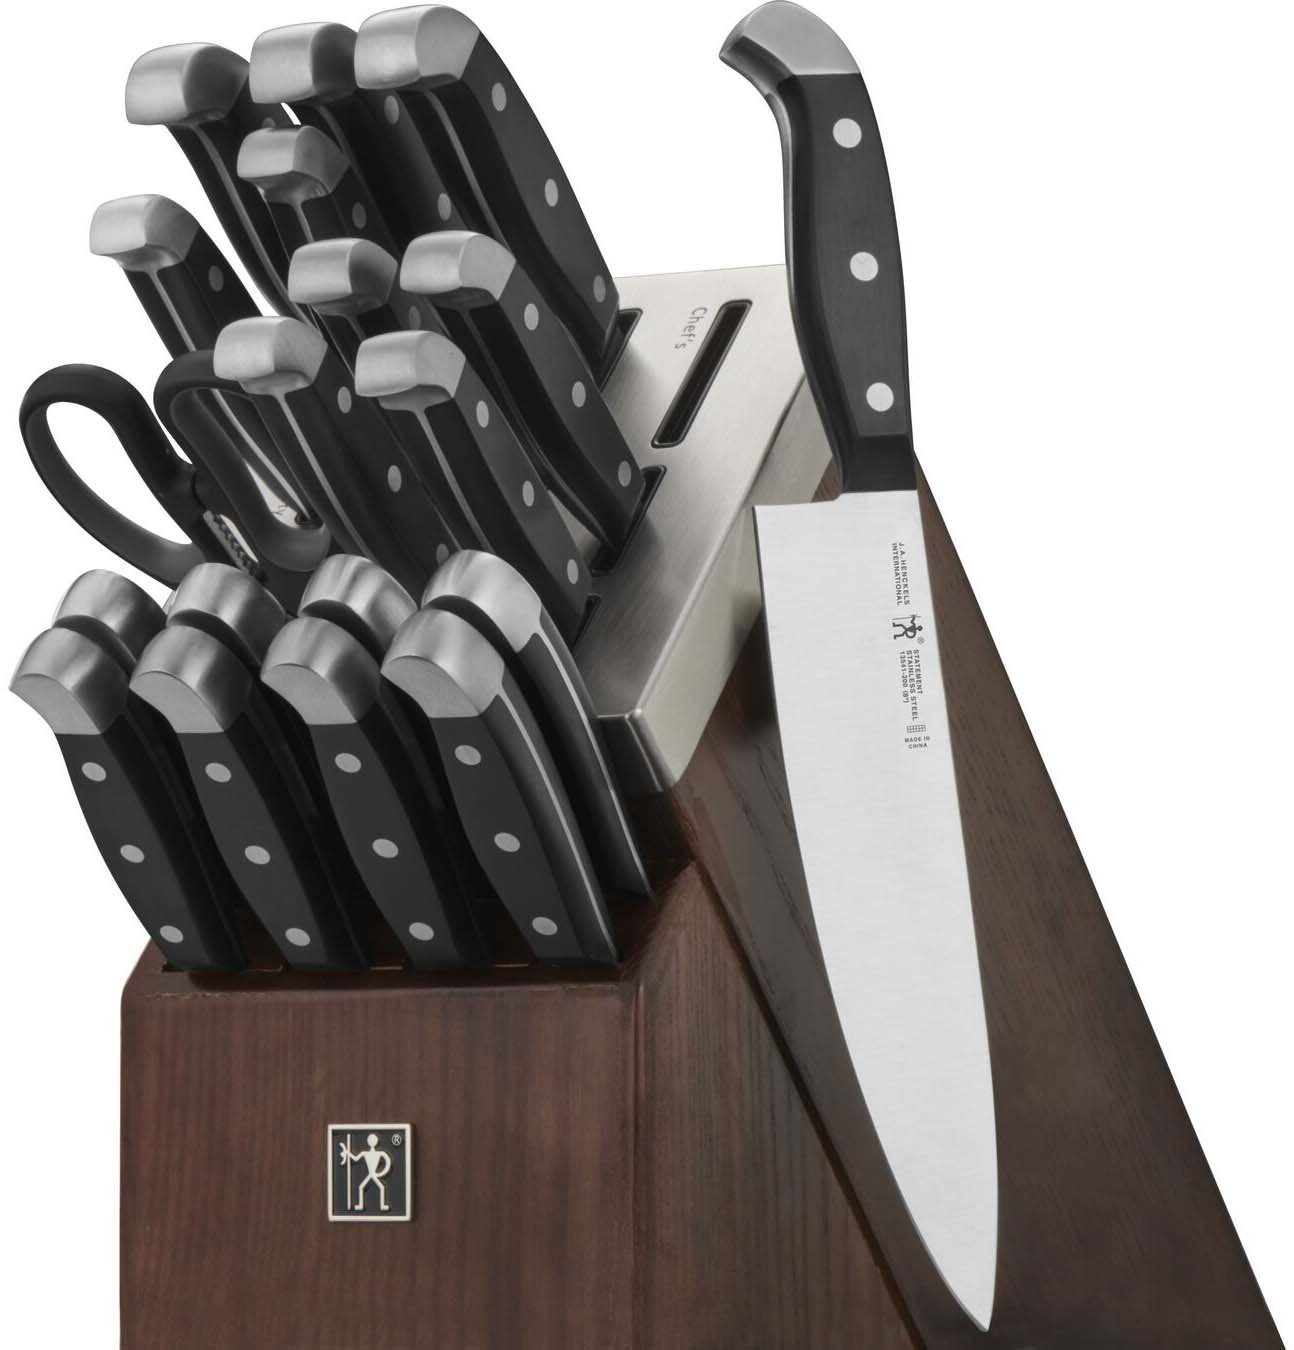 Zwilling J.A. Henckels Self-Sharpening Knife Set